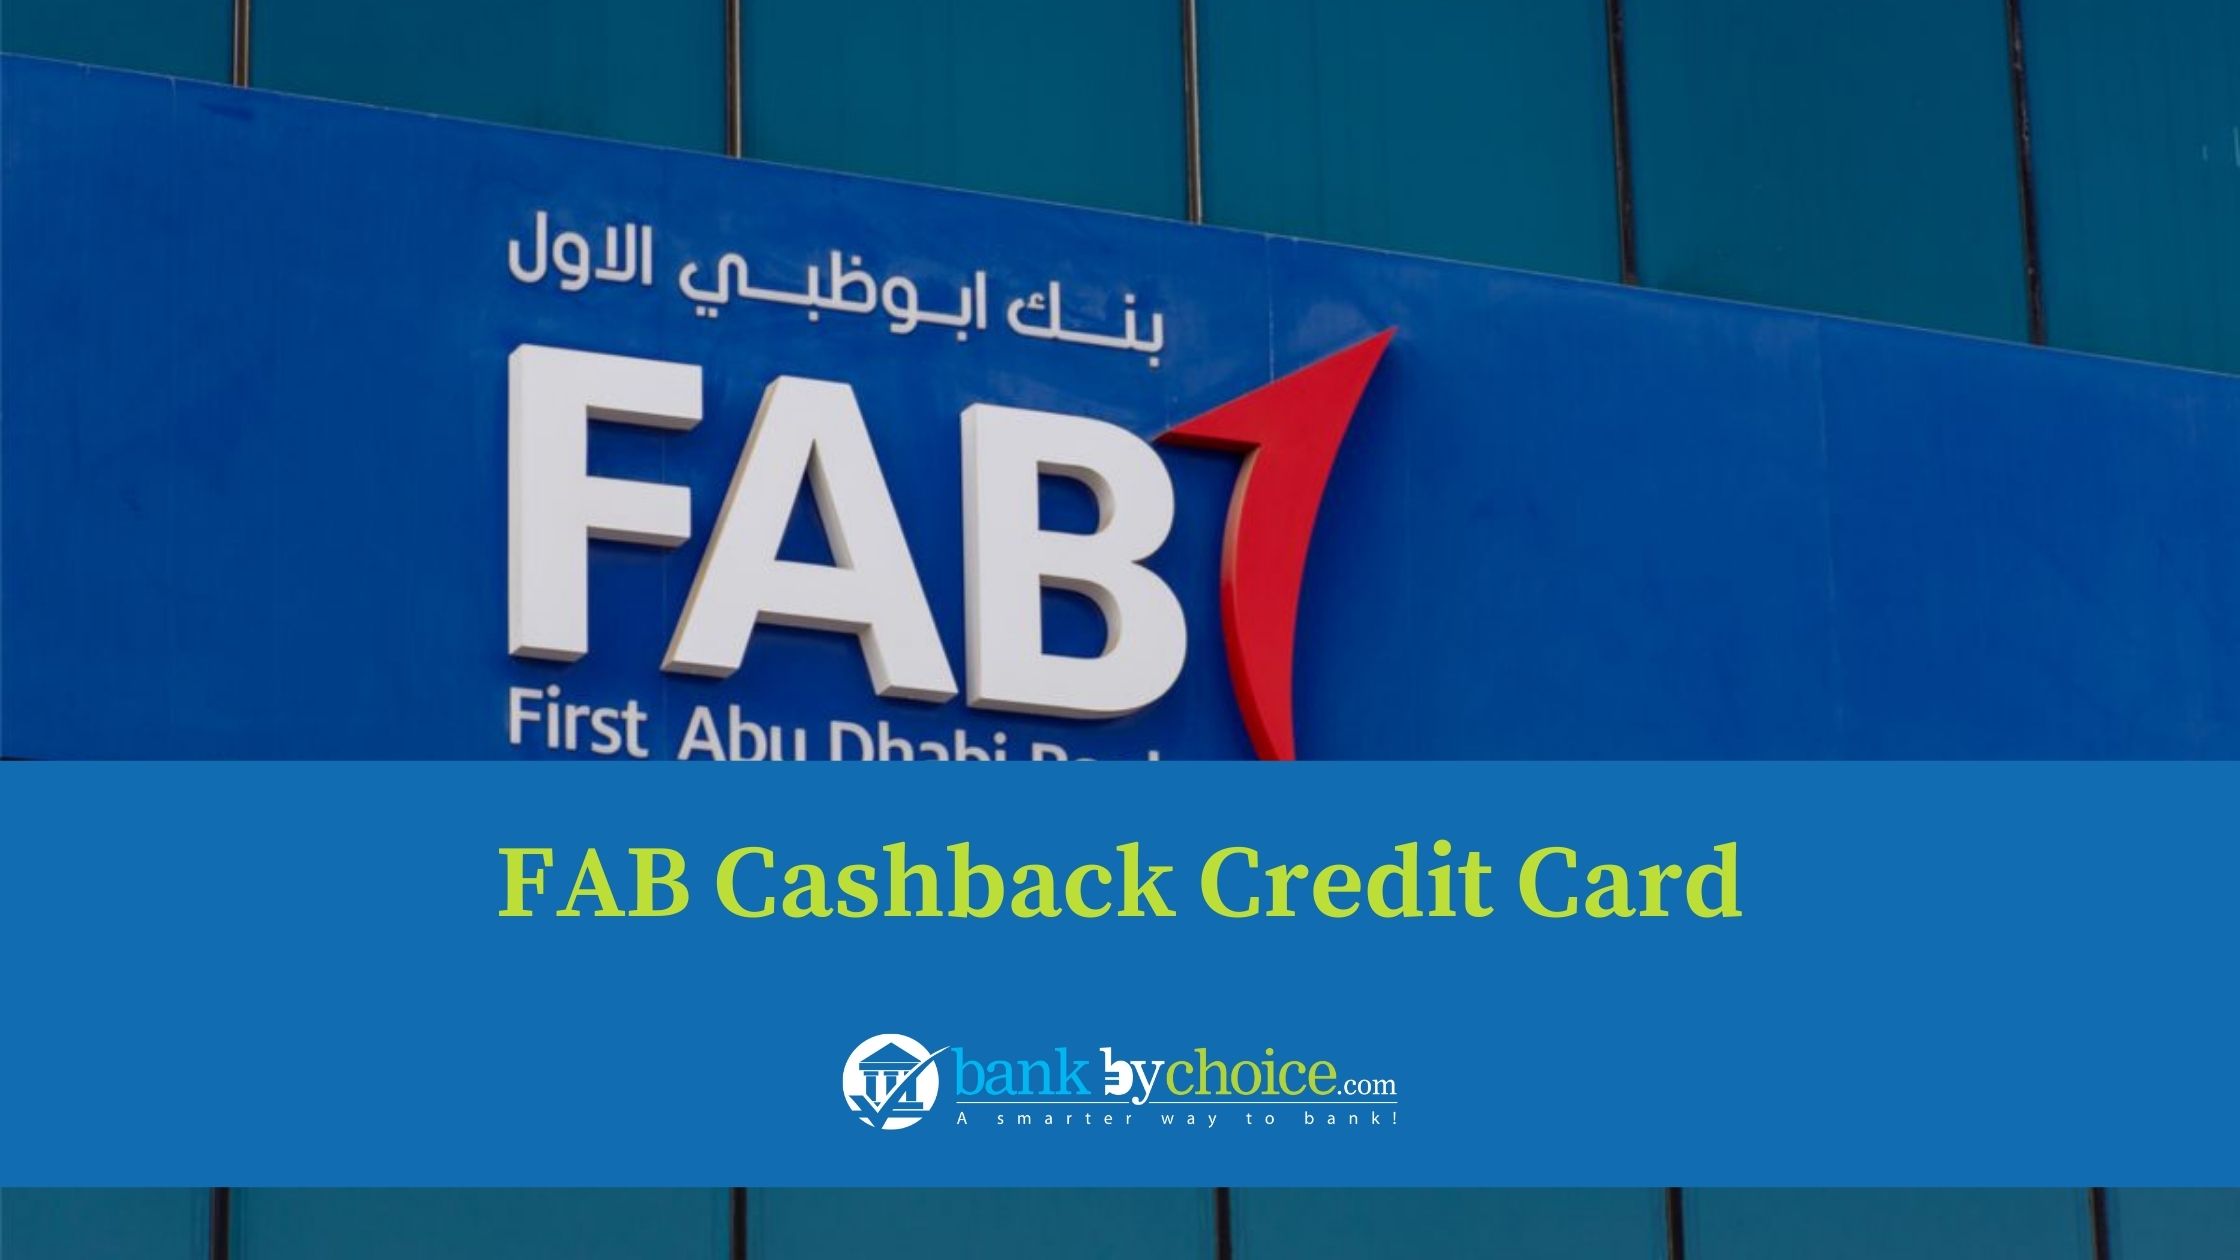 FAB cashback credit card